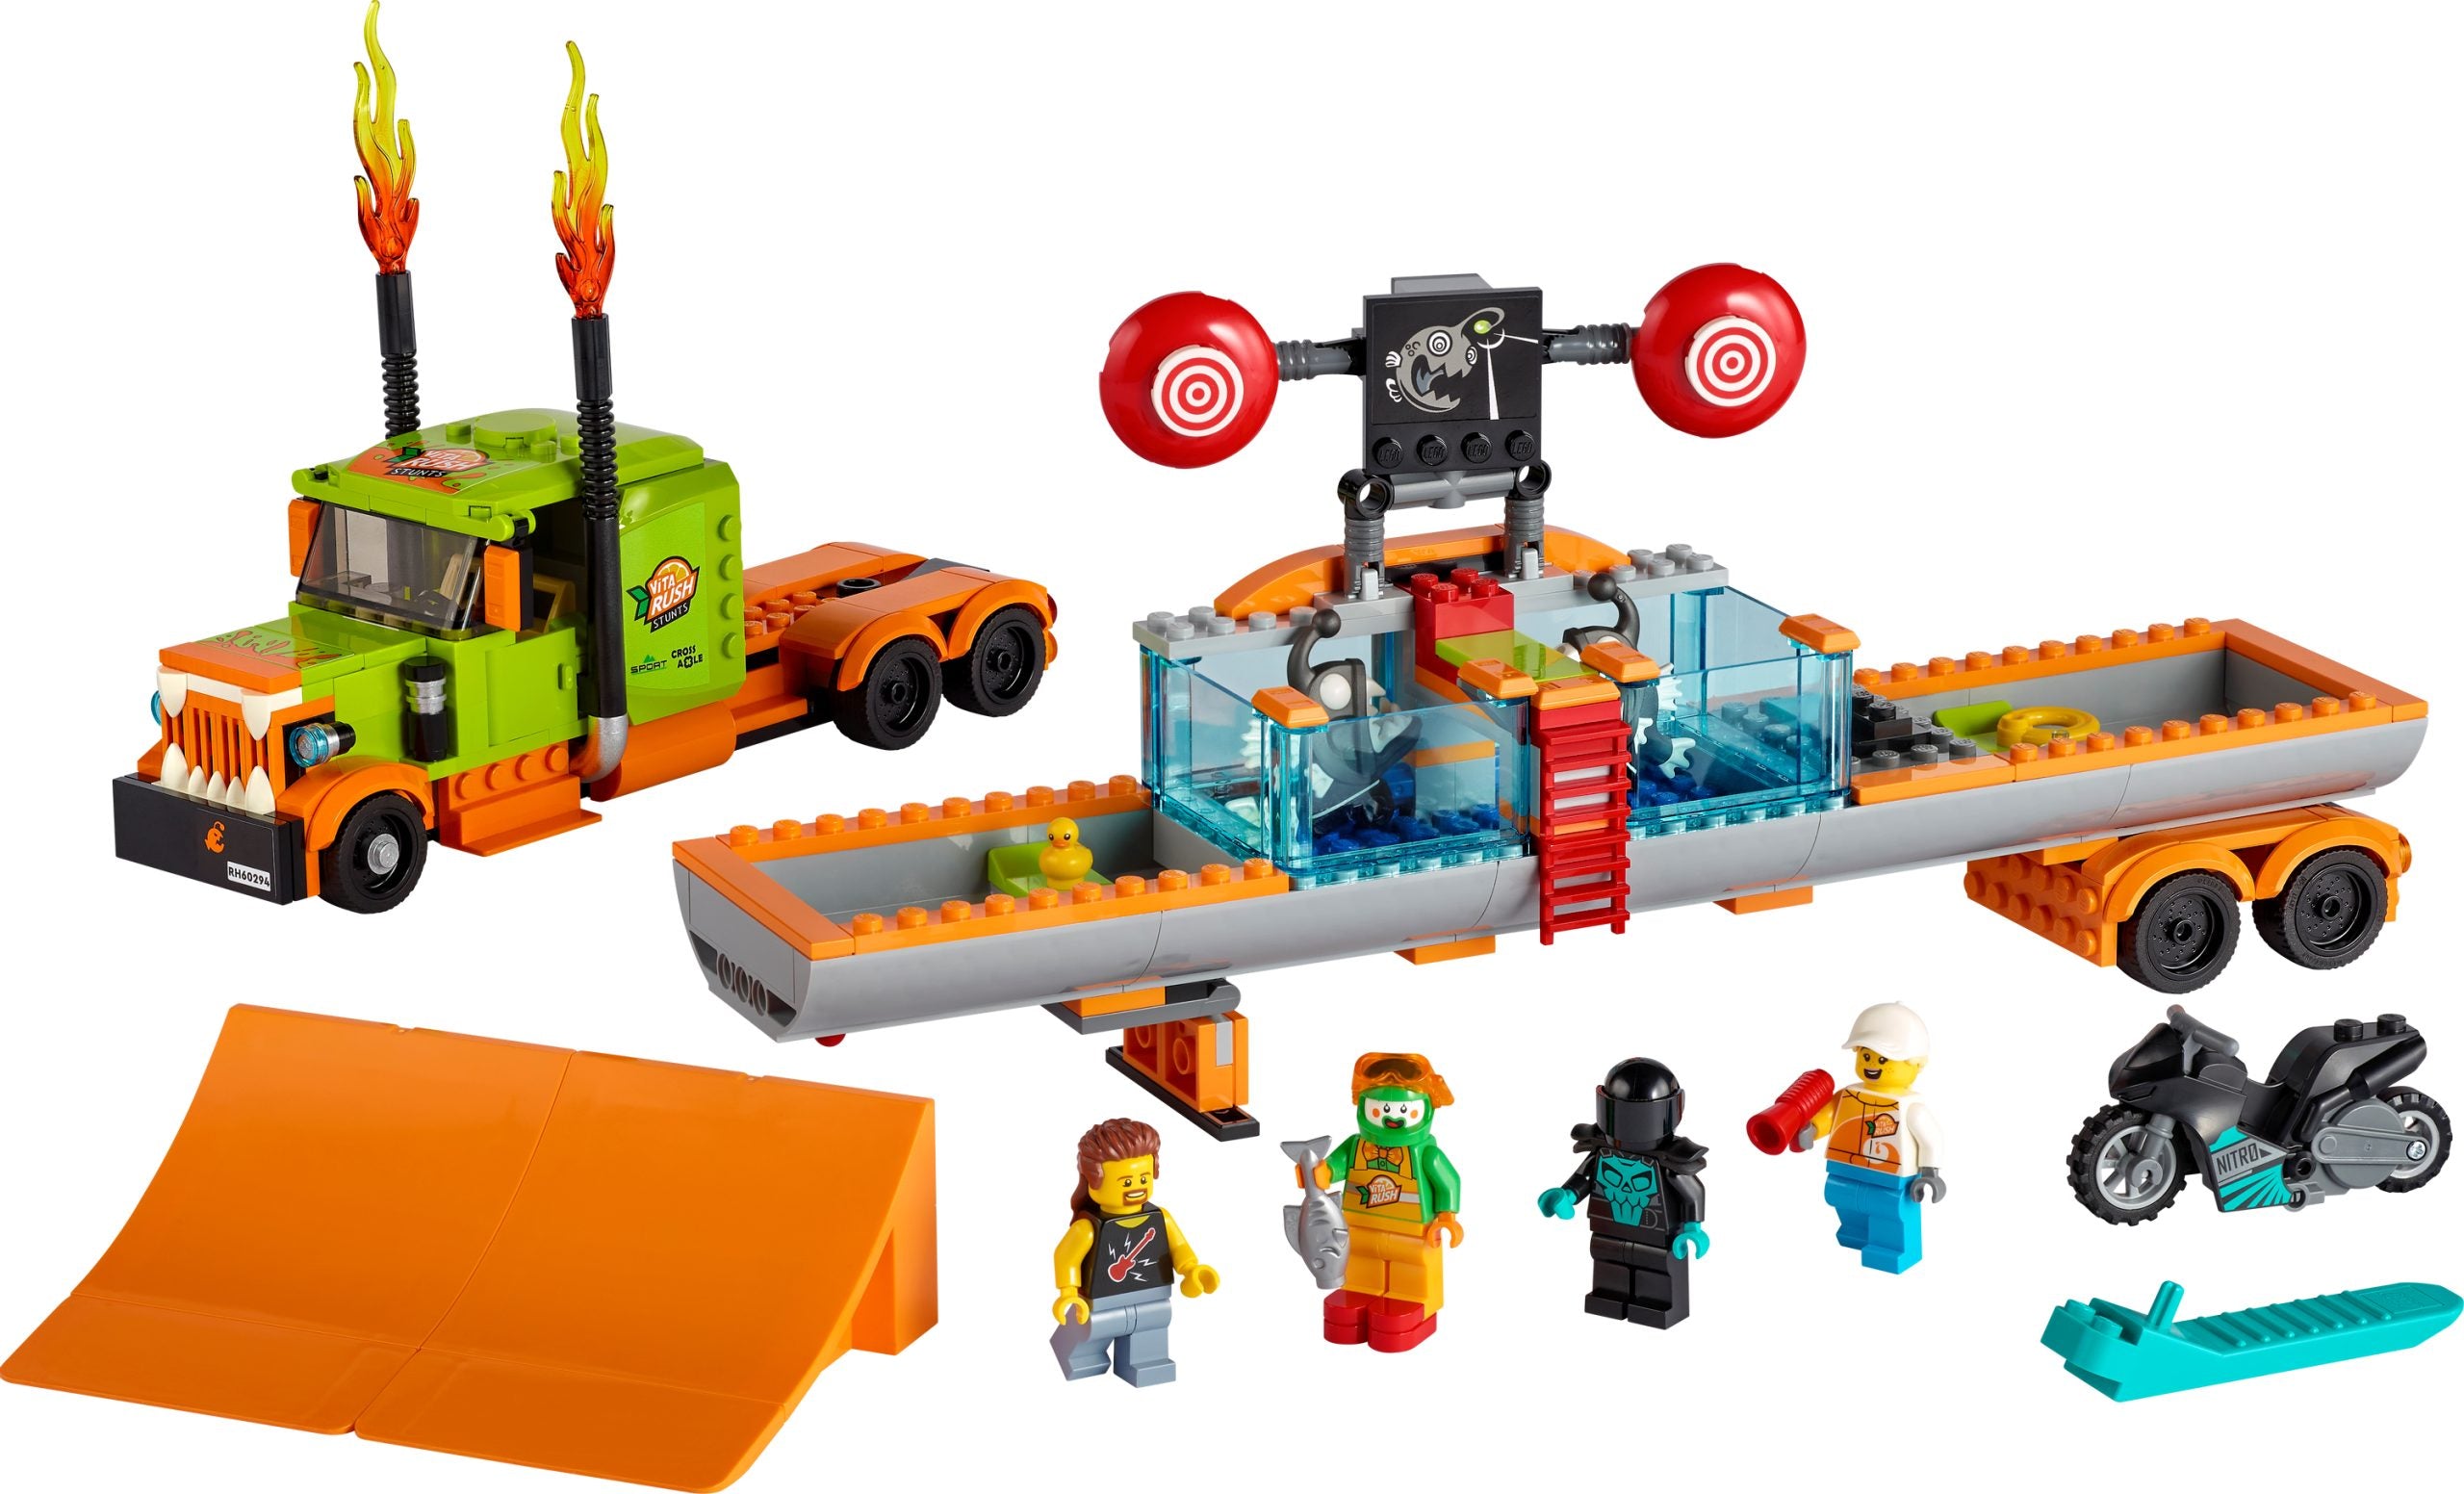 60294 LEGO® City - Truck dello Stunt Show